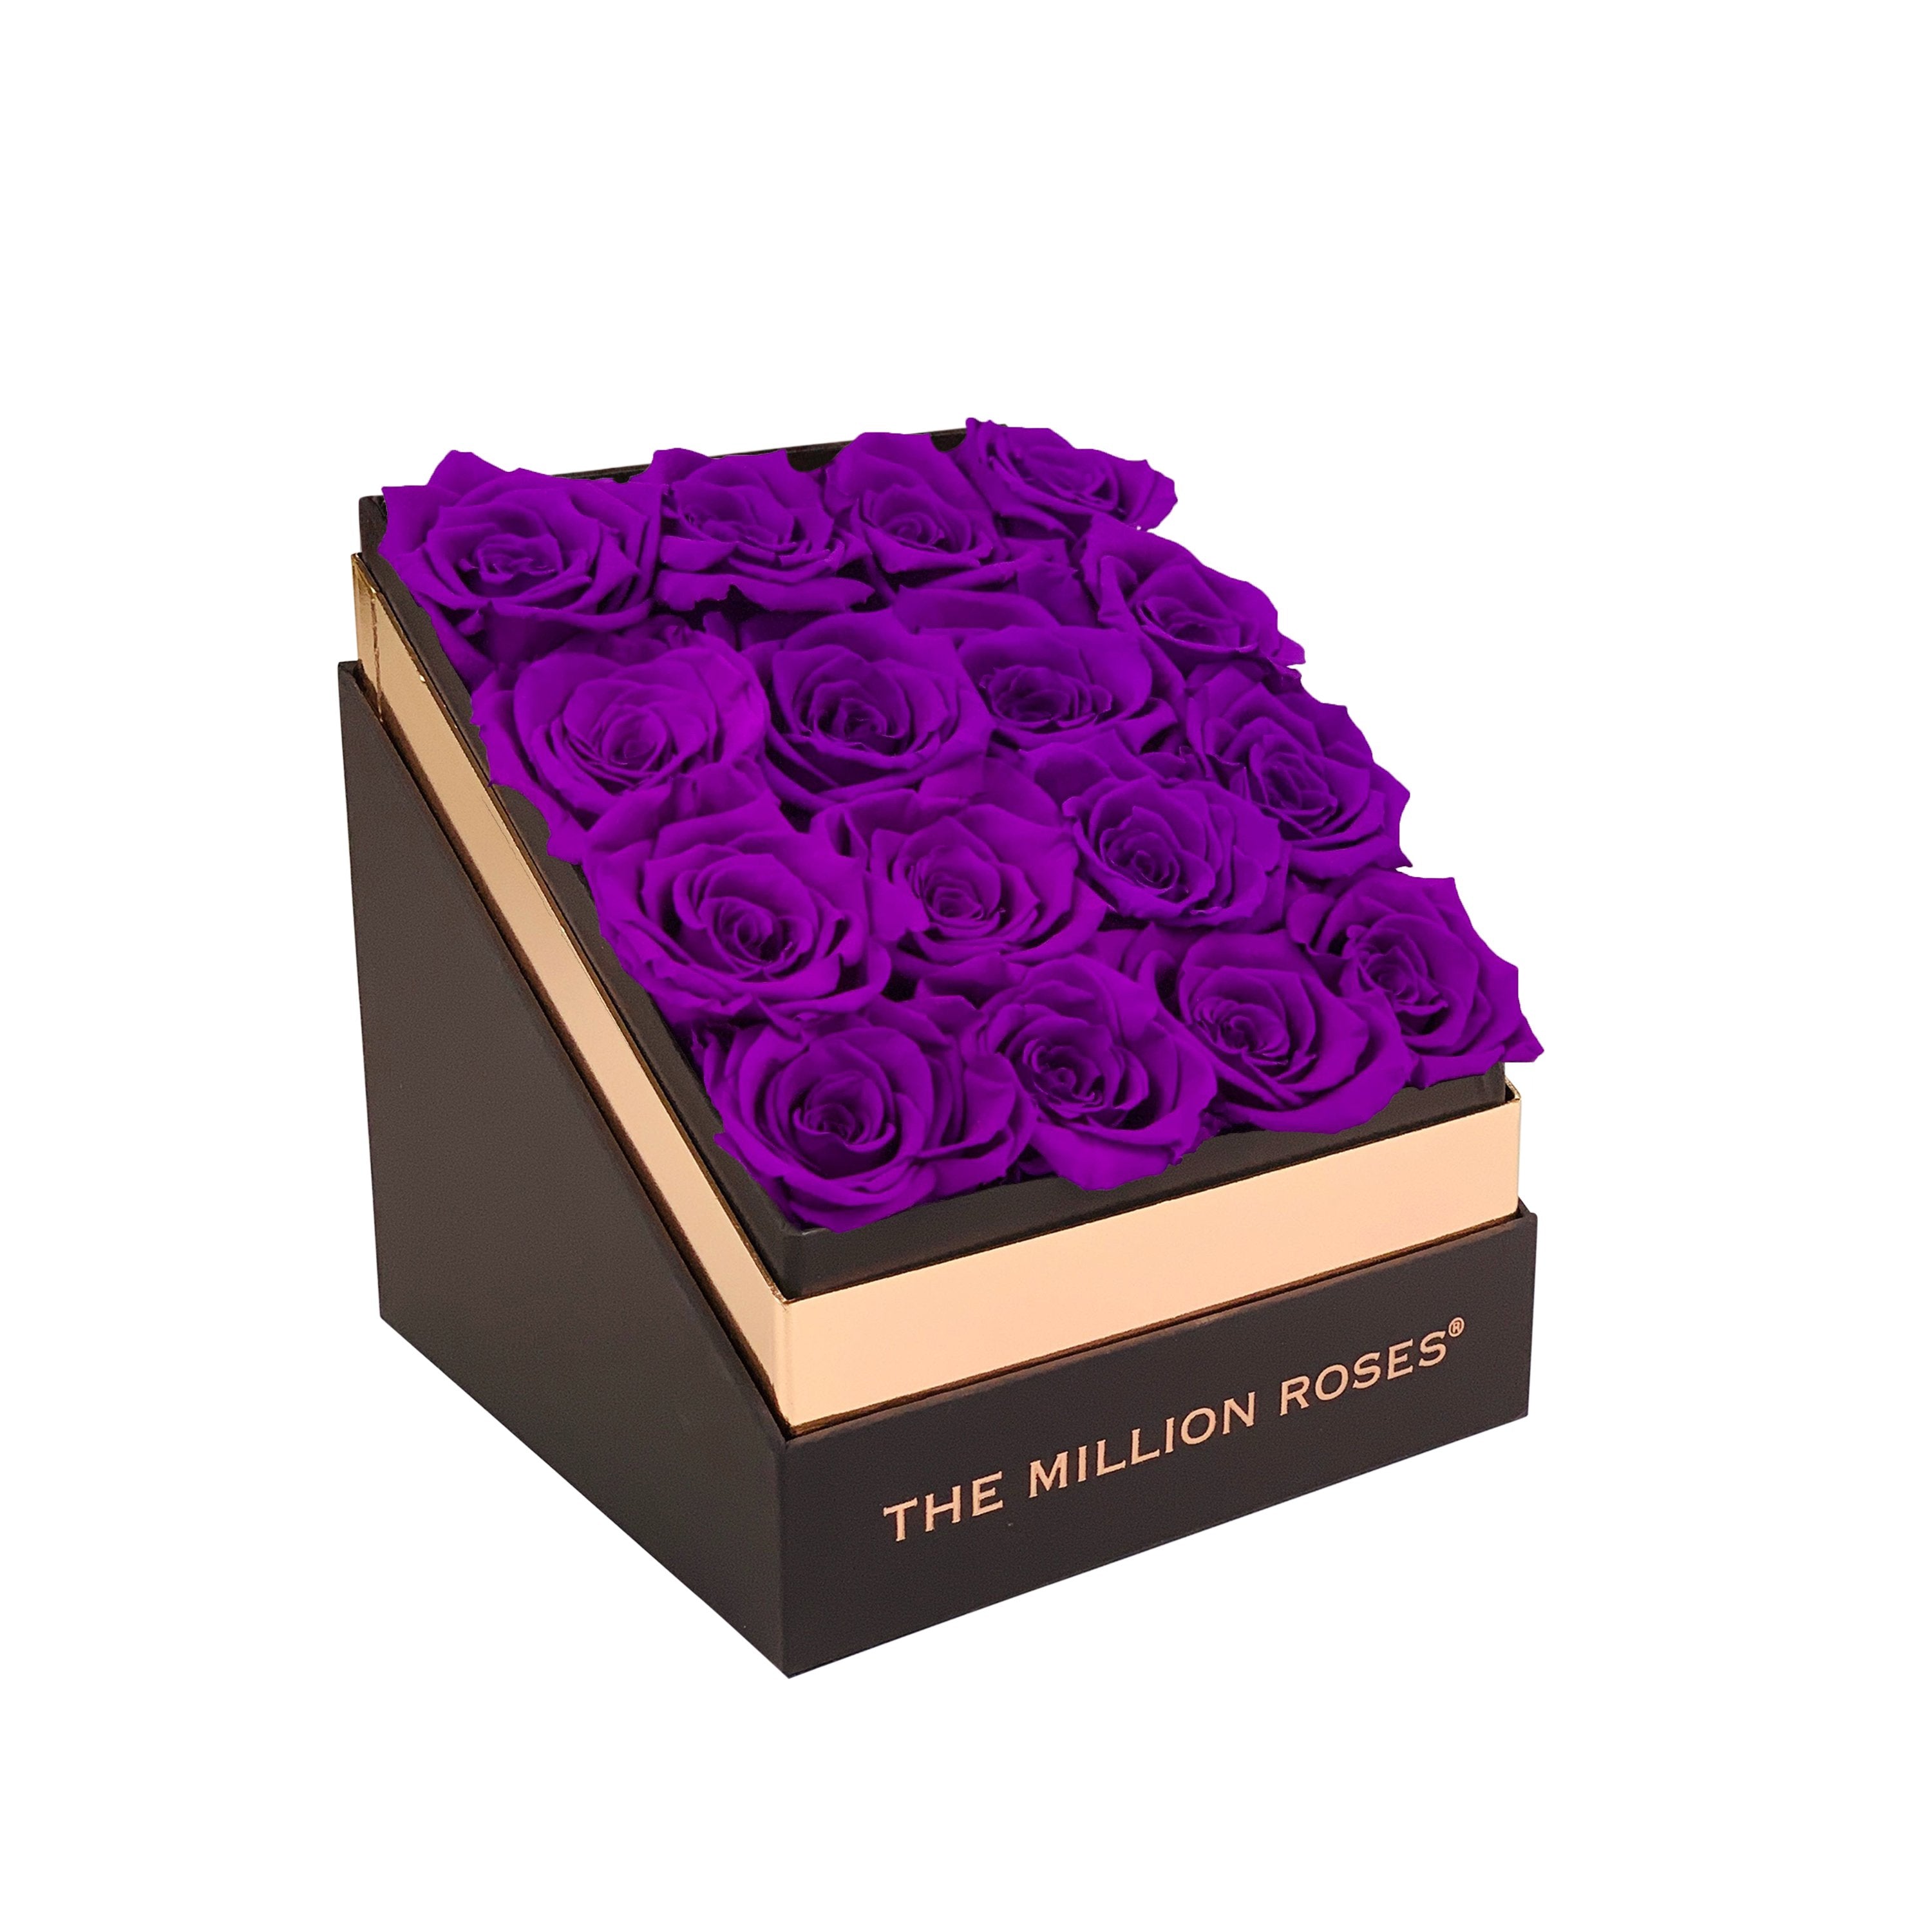 The Square - Coffee Box - Bright Purple Roses